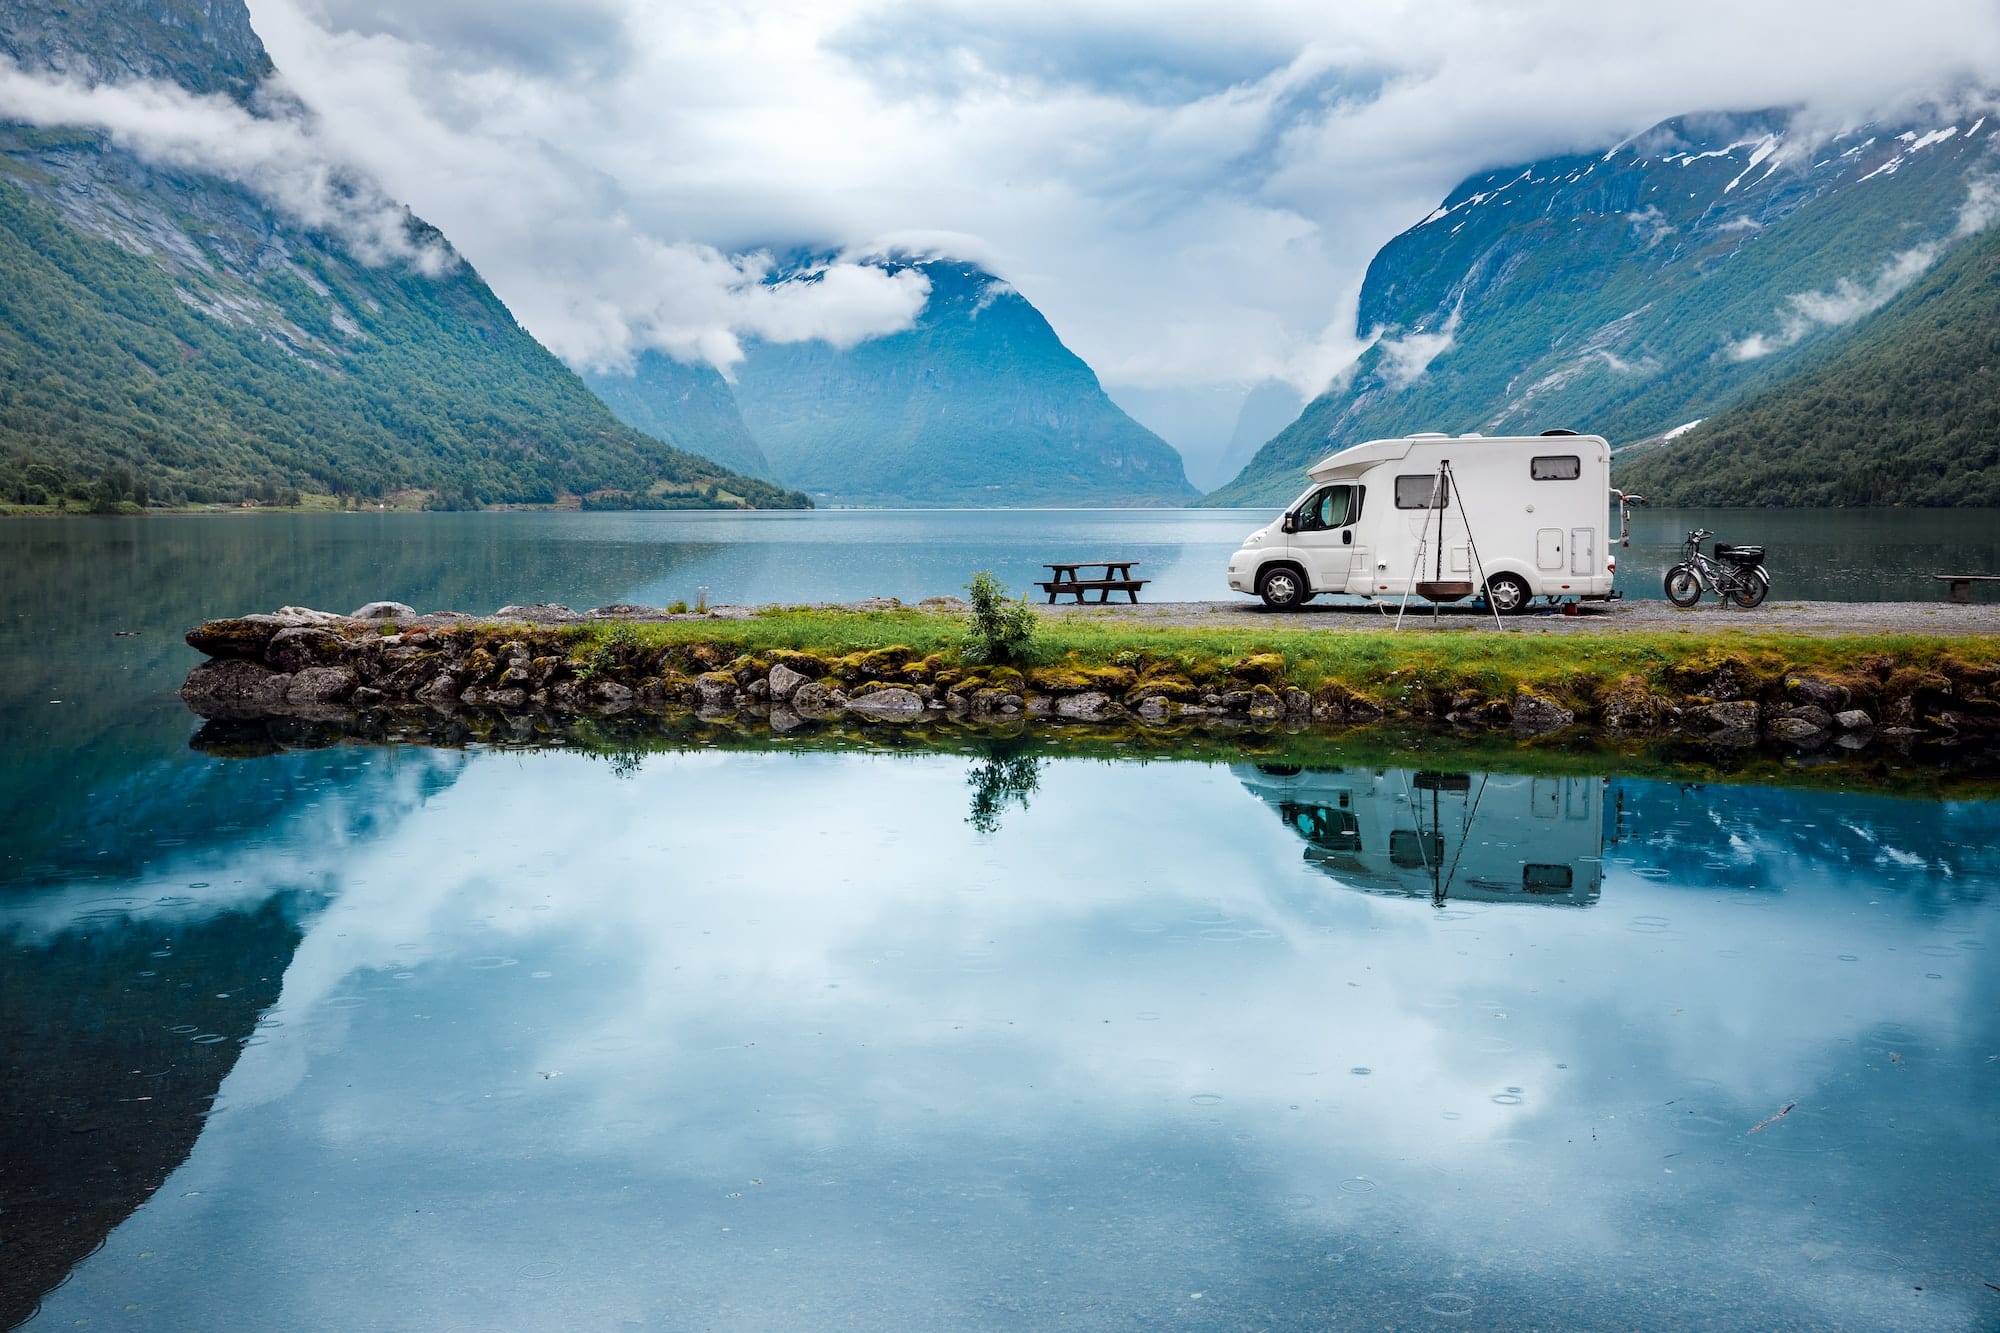 Comment dénicher le meilleur camping car haut de gamme ?